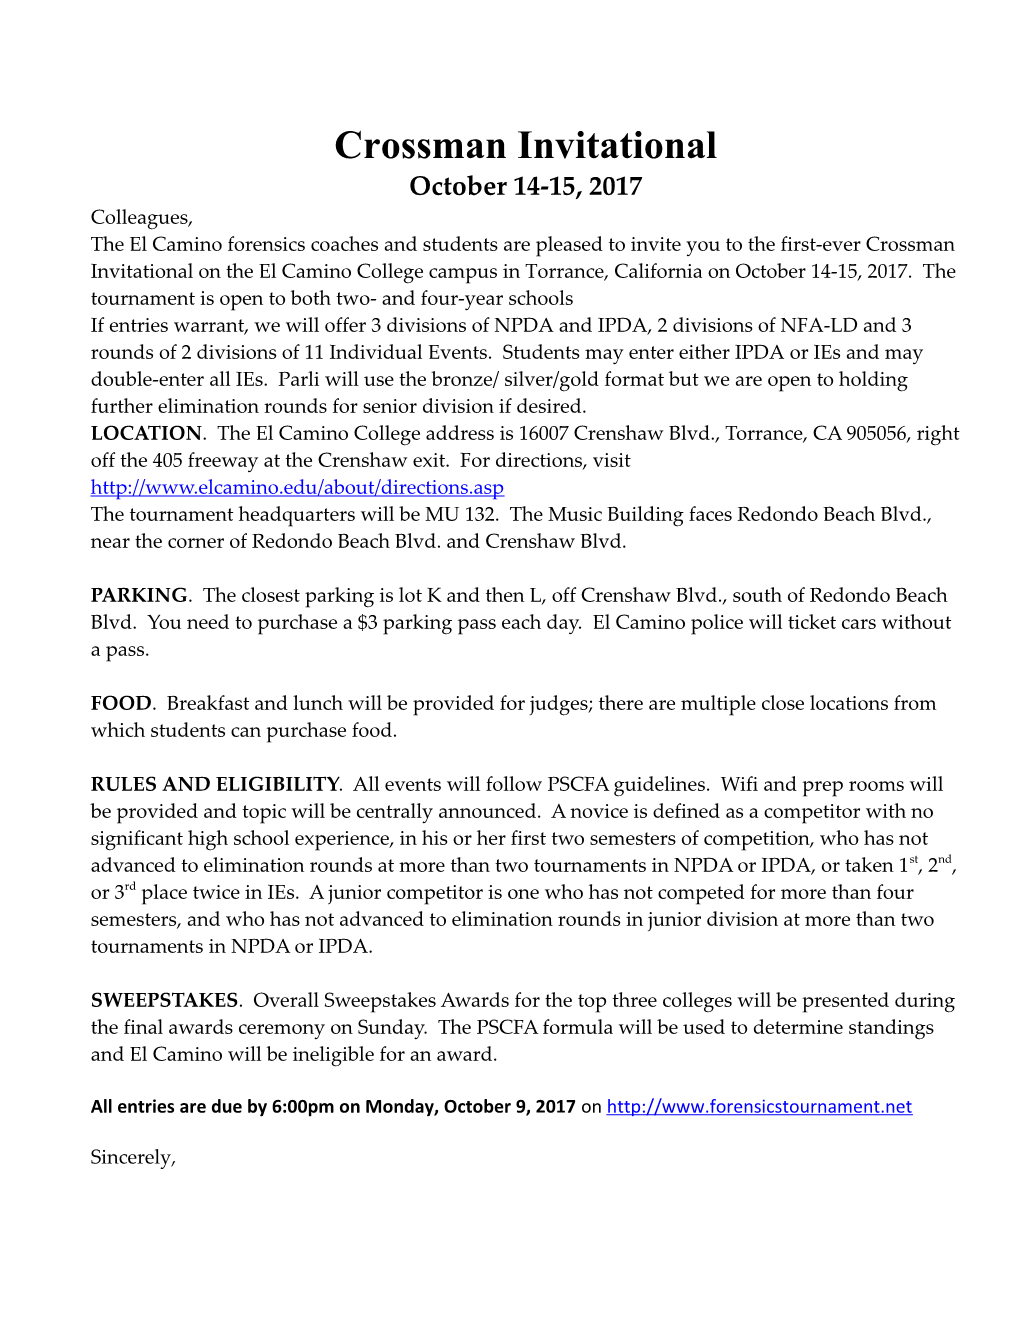 Crossman Invitational October 14-15, 2017